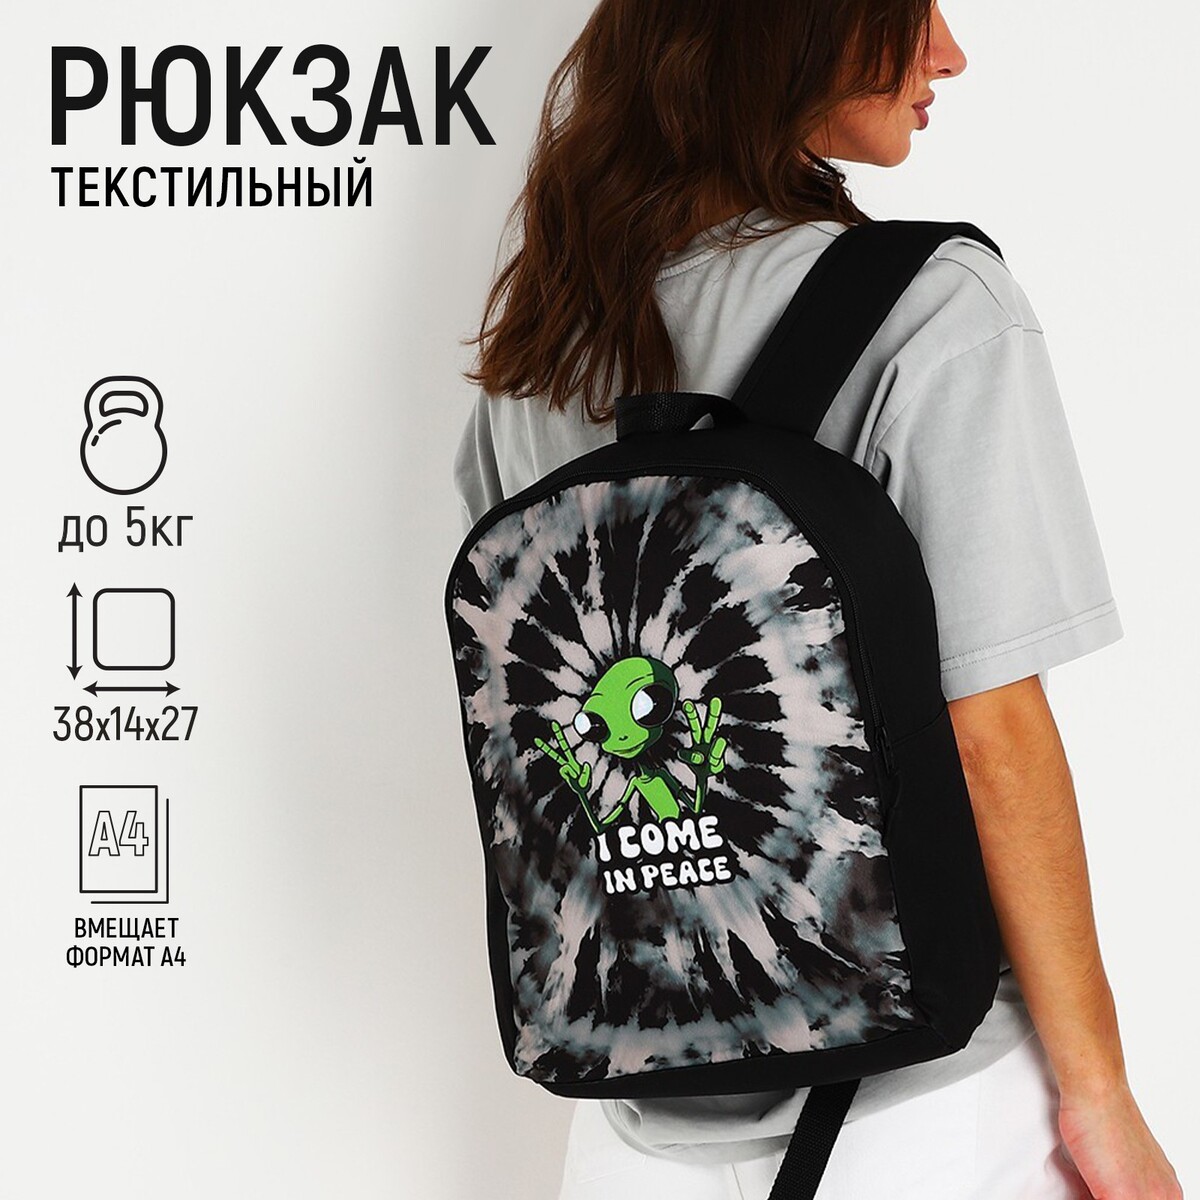 Рюкзак текстильный инопланетянин, 38х14х27 см, цвет черный рюкзак текстильный кеды 38х14х27 см